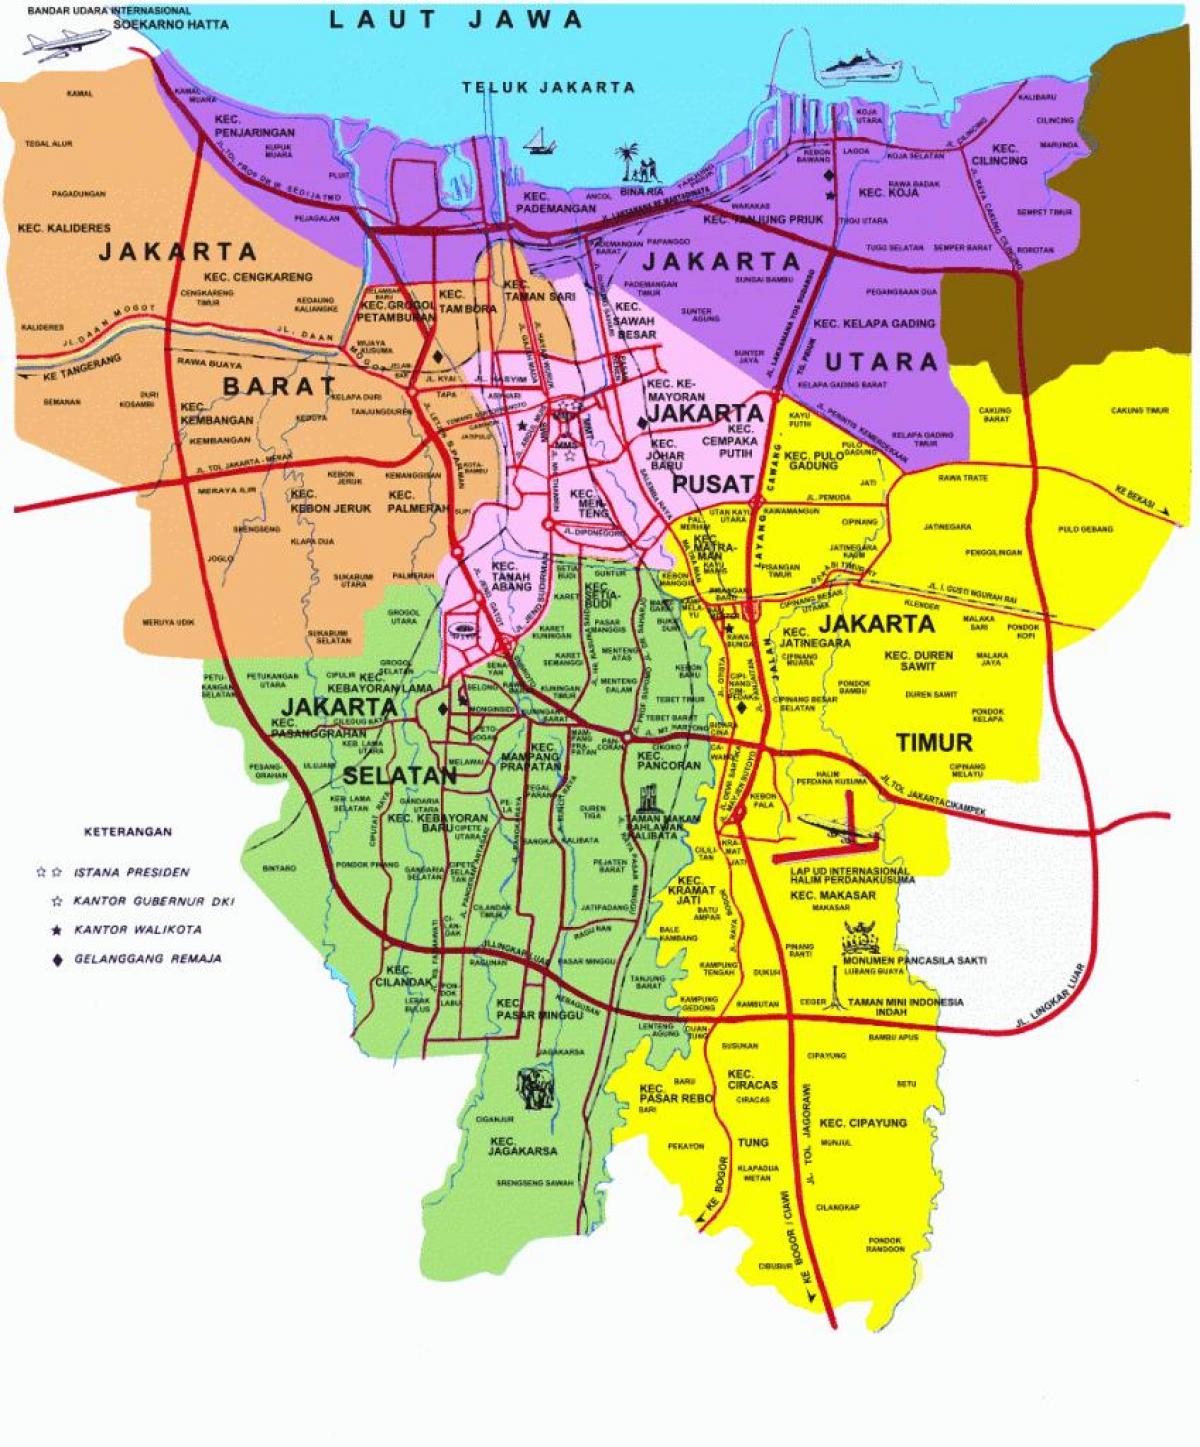  Jakarta  Sehensw rdigkeiten Karte  Karte  von Jakarta  